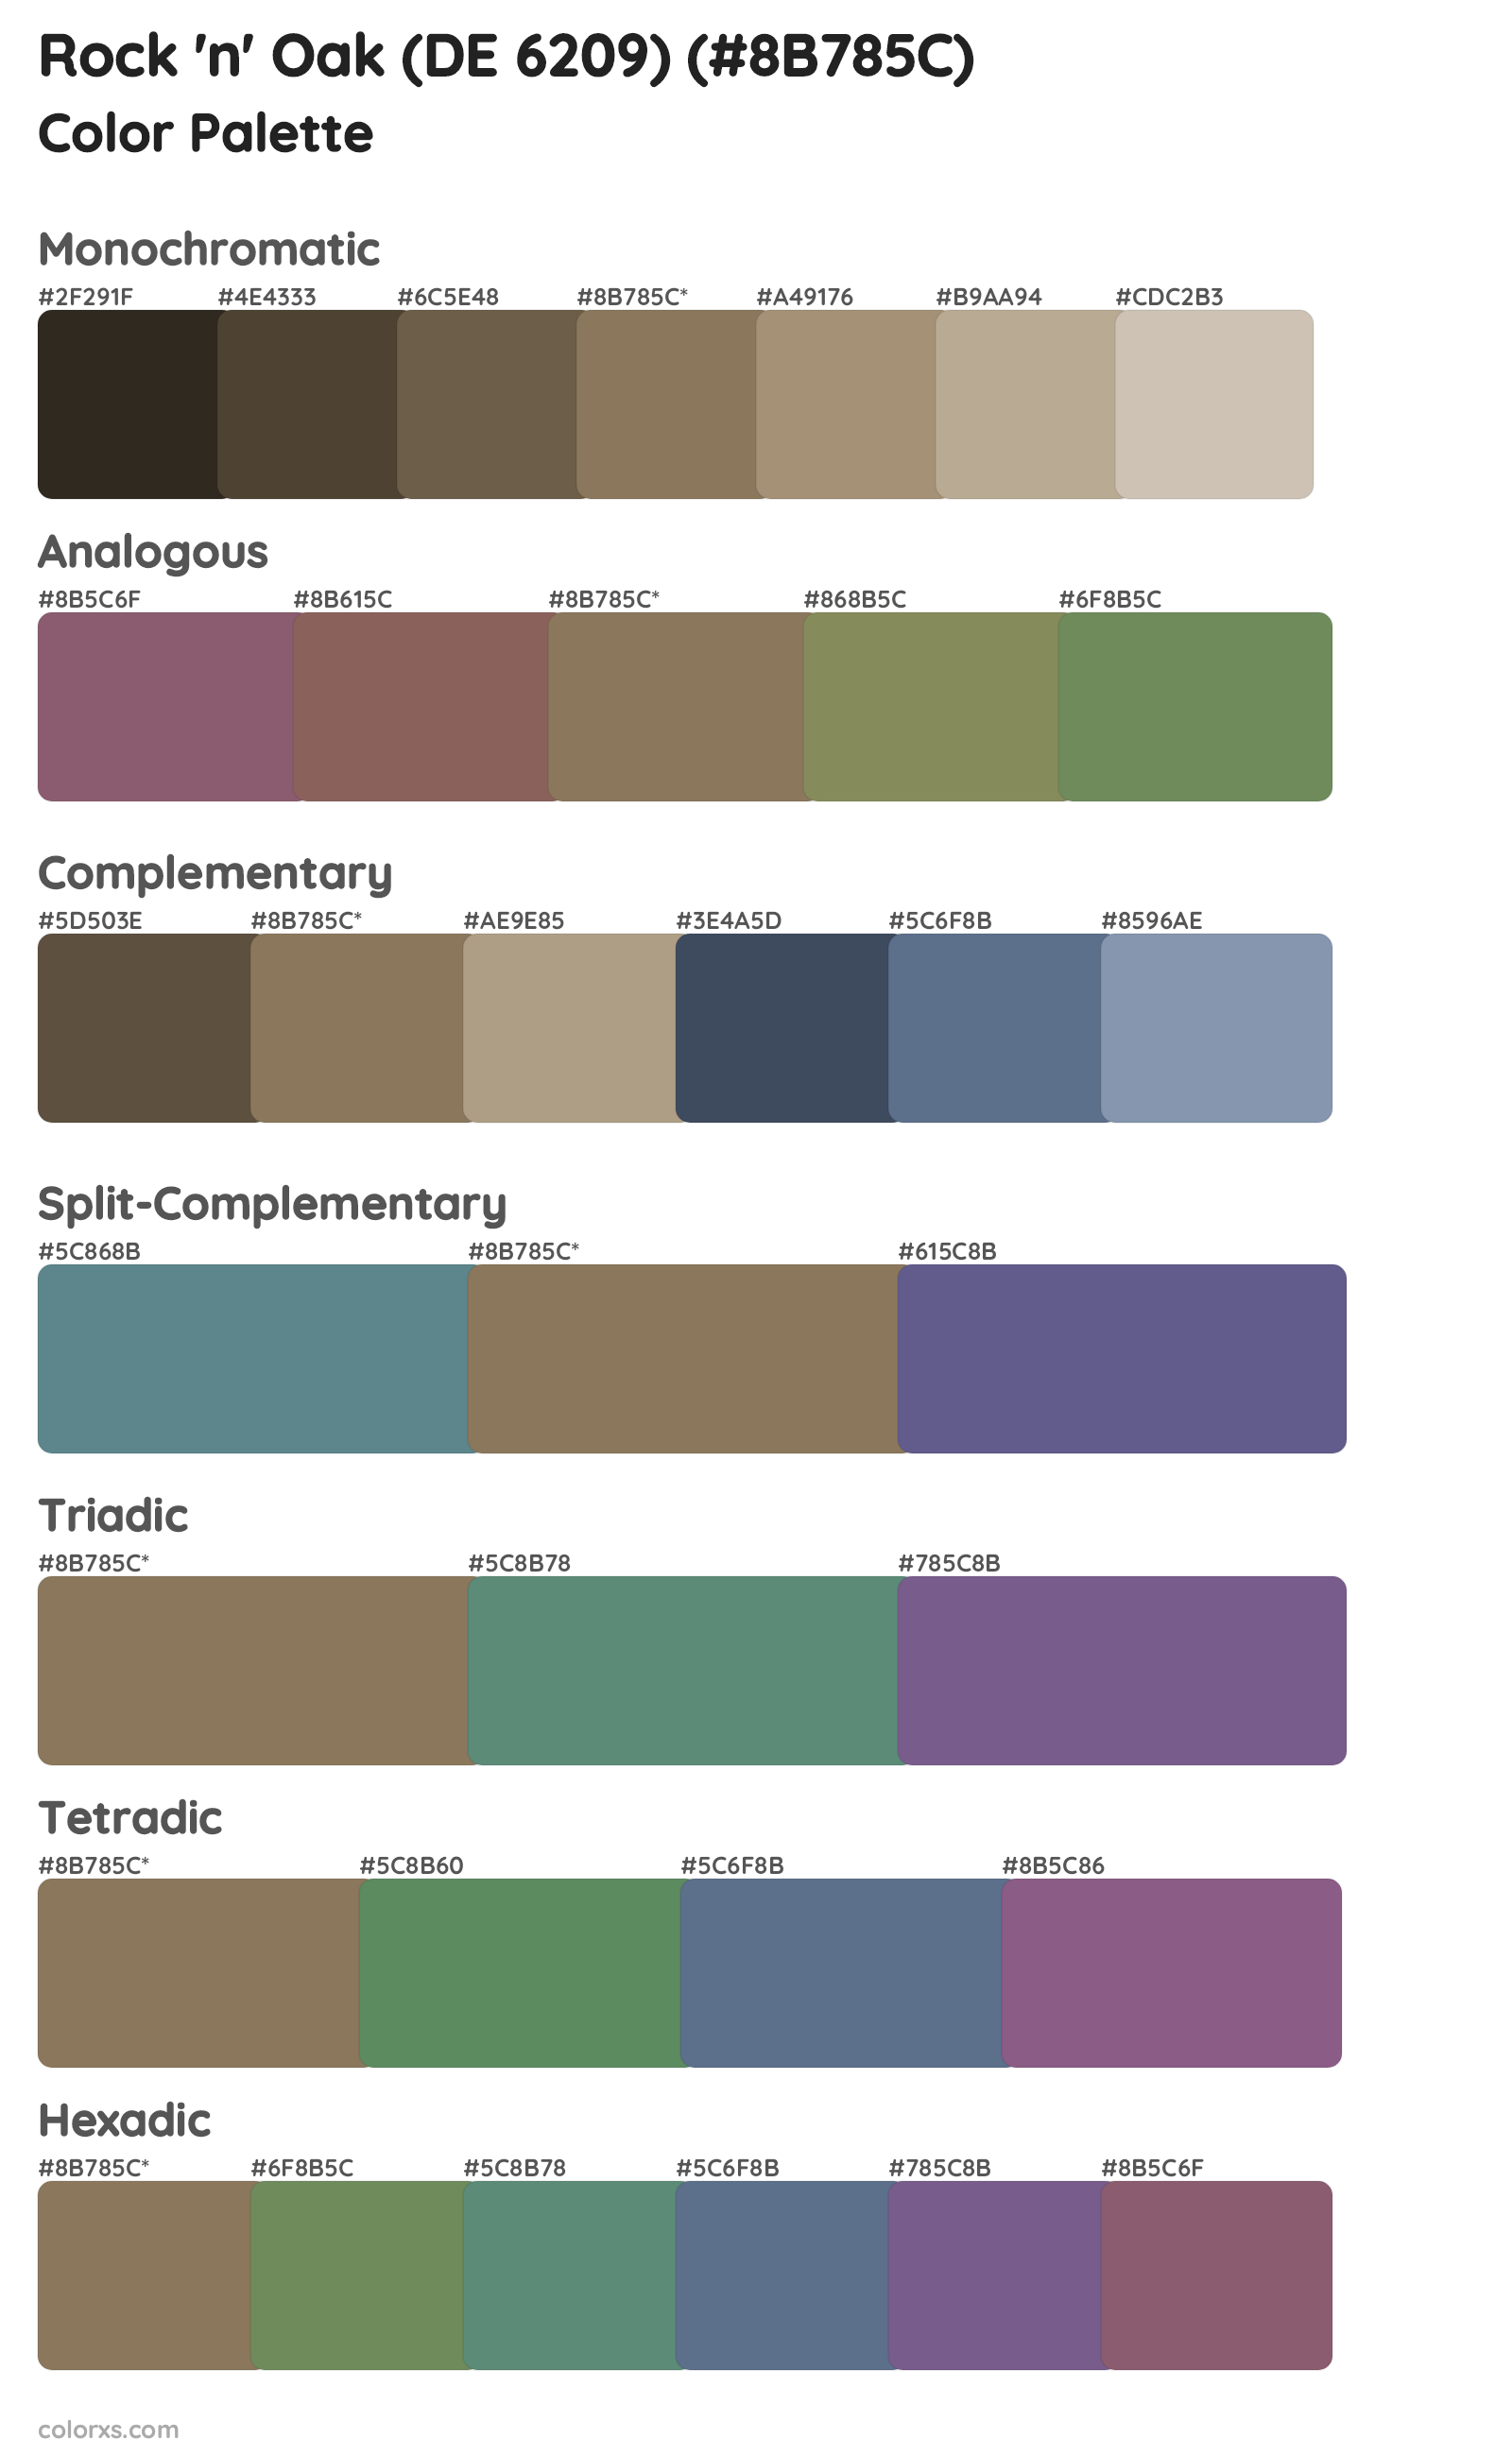 Rock 'n' Oak (DE 6209) Color Scheme Palettes